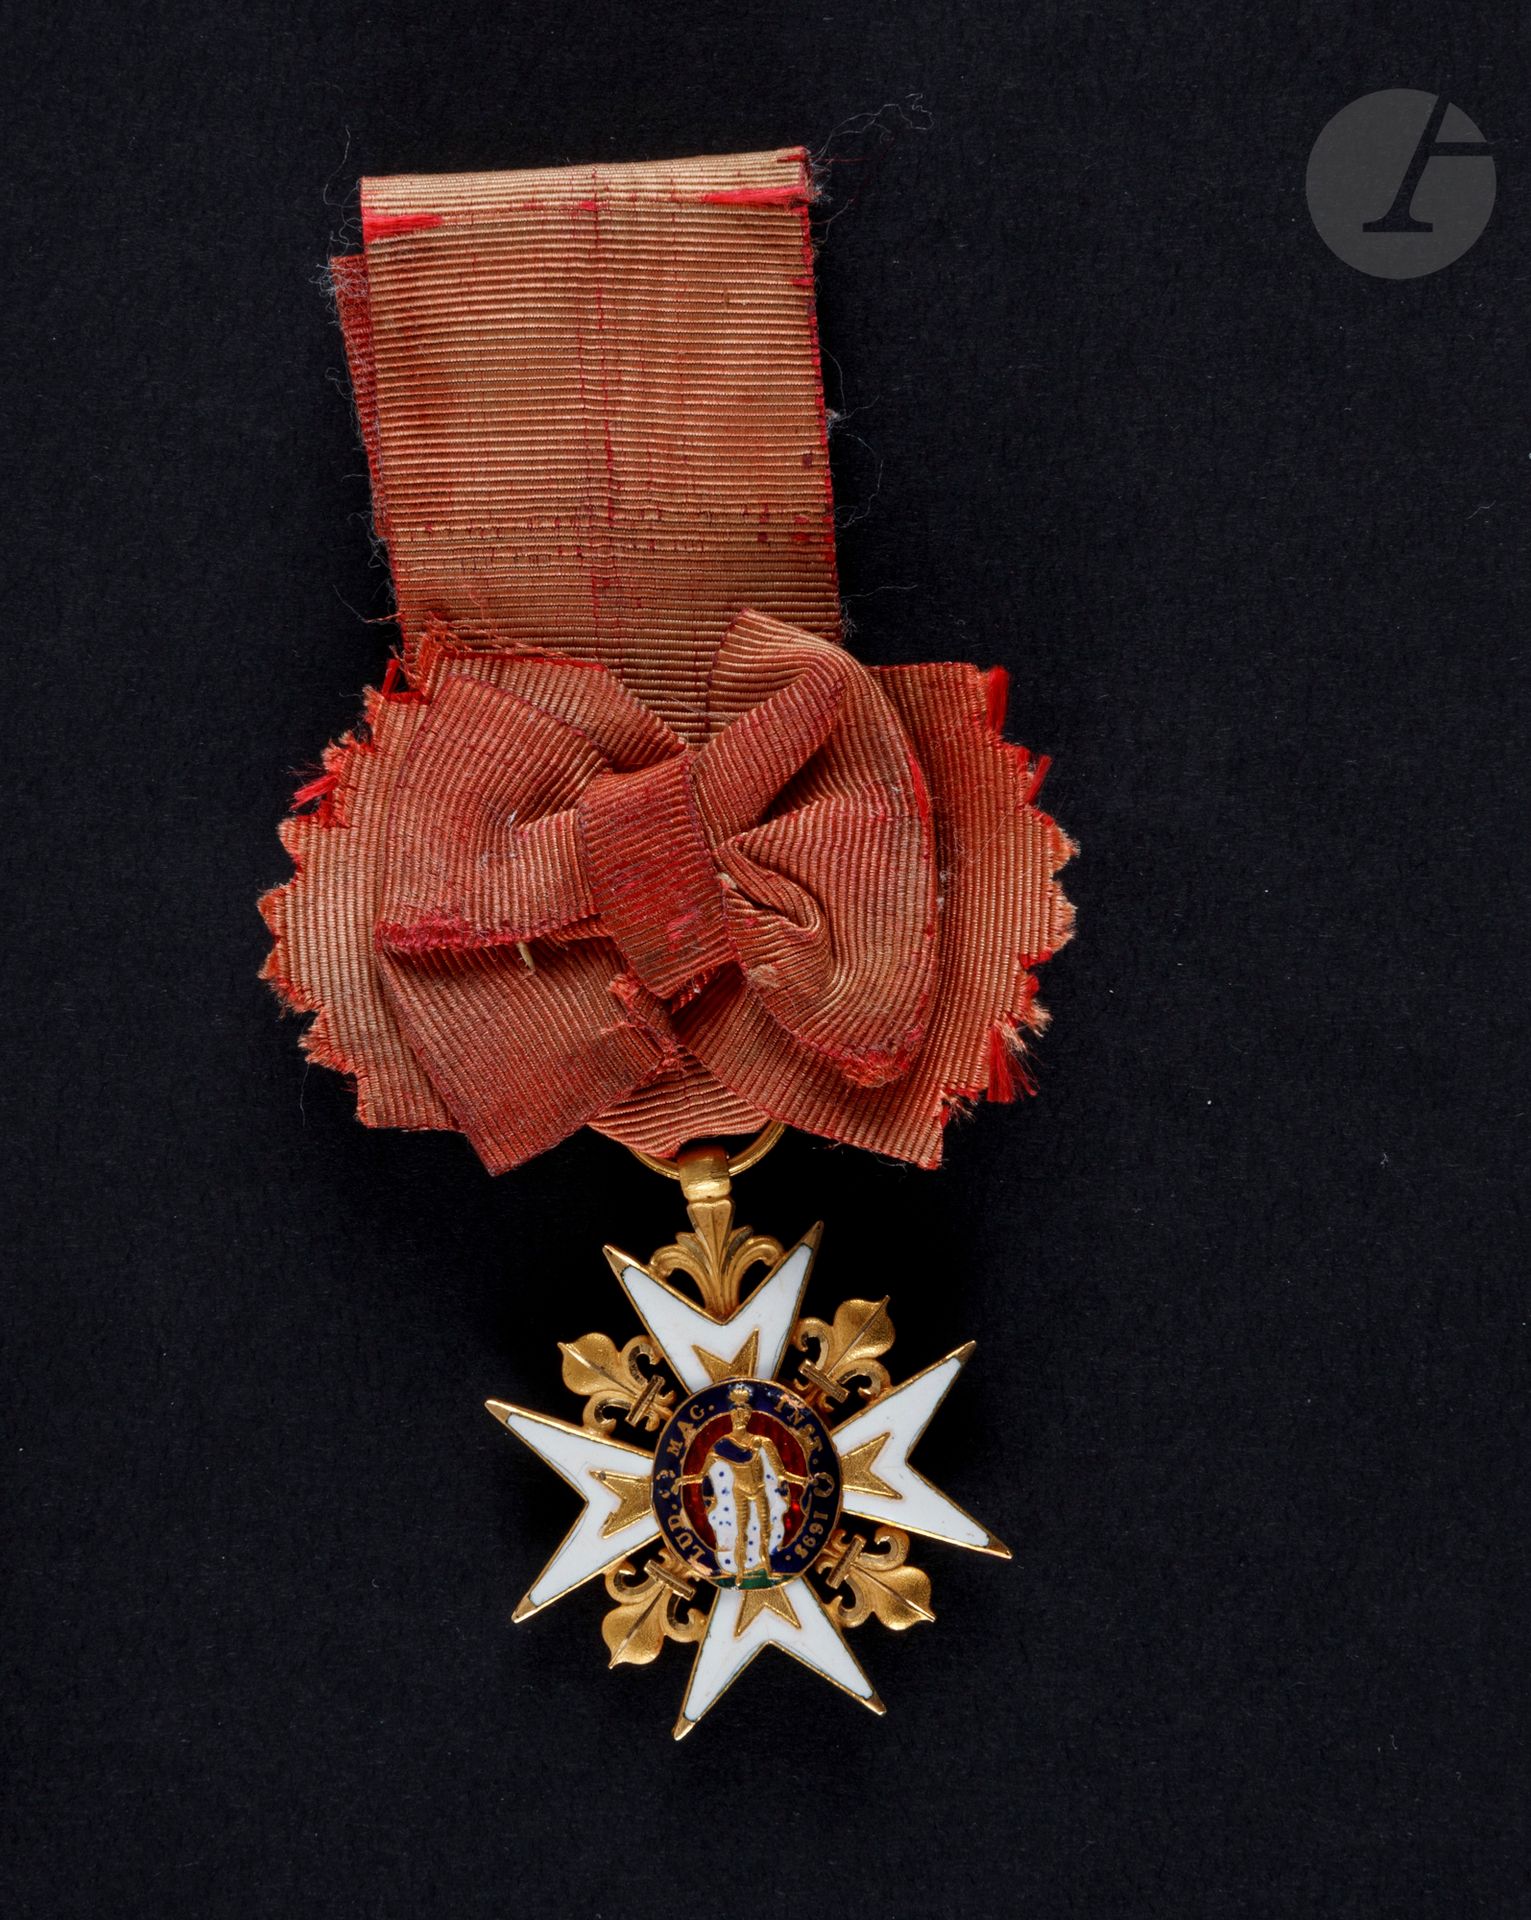 Null 法国
圣路易皇家军事勋章(1693)
十八世纪末或复辟时期的骑士之星。
金和珐琅（碎片），十字架上有无栓的点。
凹槽环。带结的丝带。
36毫米 - 毛&hellip;